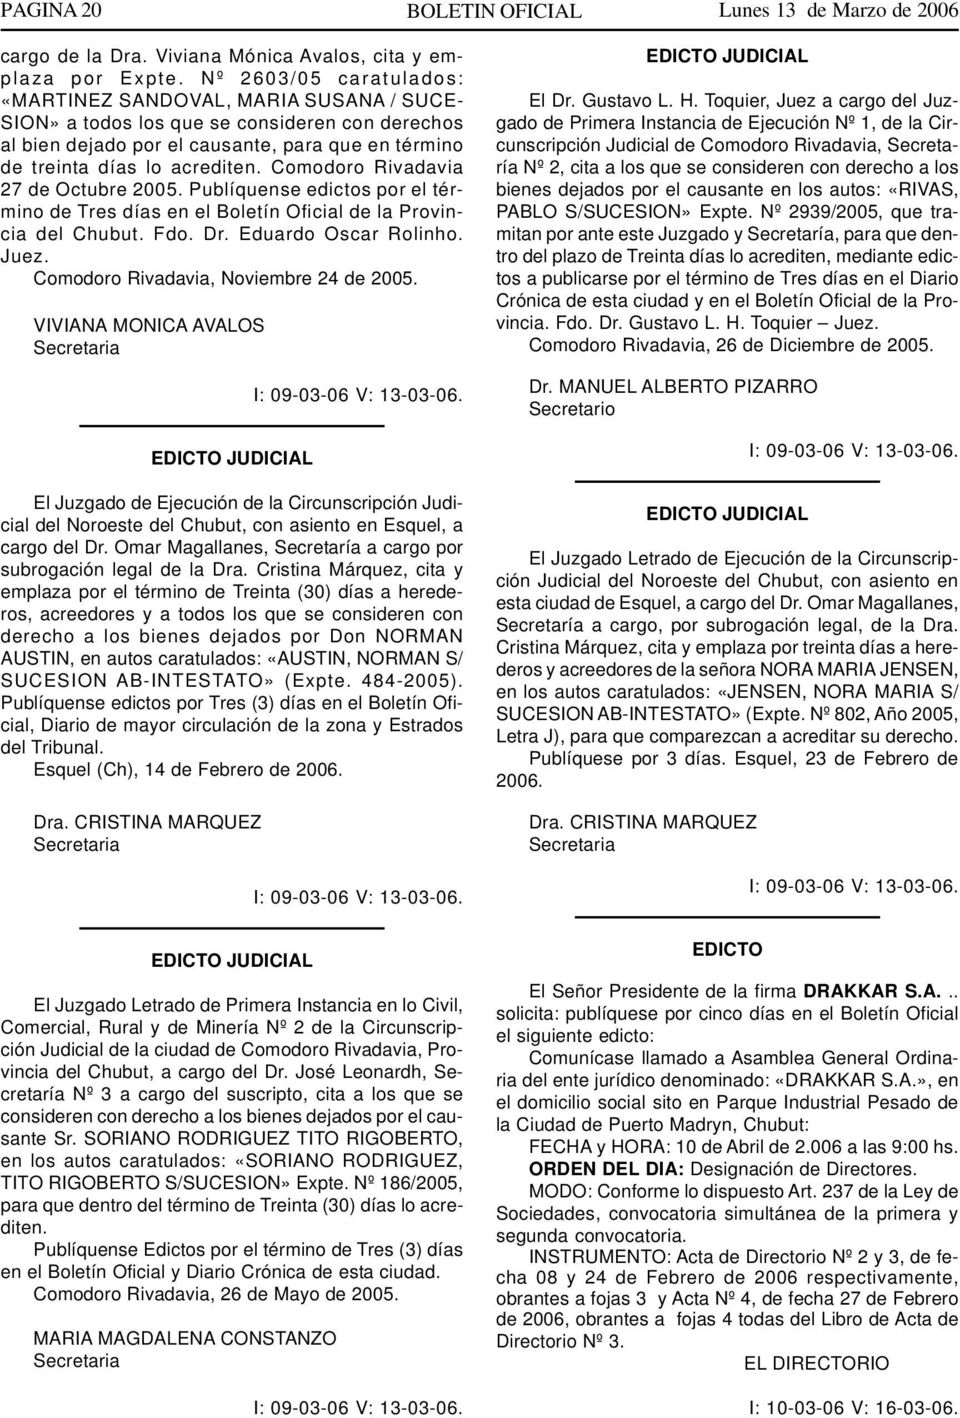 Comodoro Rivadavia 27 de Octubre 2005. Publíquense edictos por el término de Tres días en el Boletín Ofici de la Provincia del Chubut. Fdo. Dr. Eduardo Oscar Rolinho. Juez.